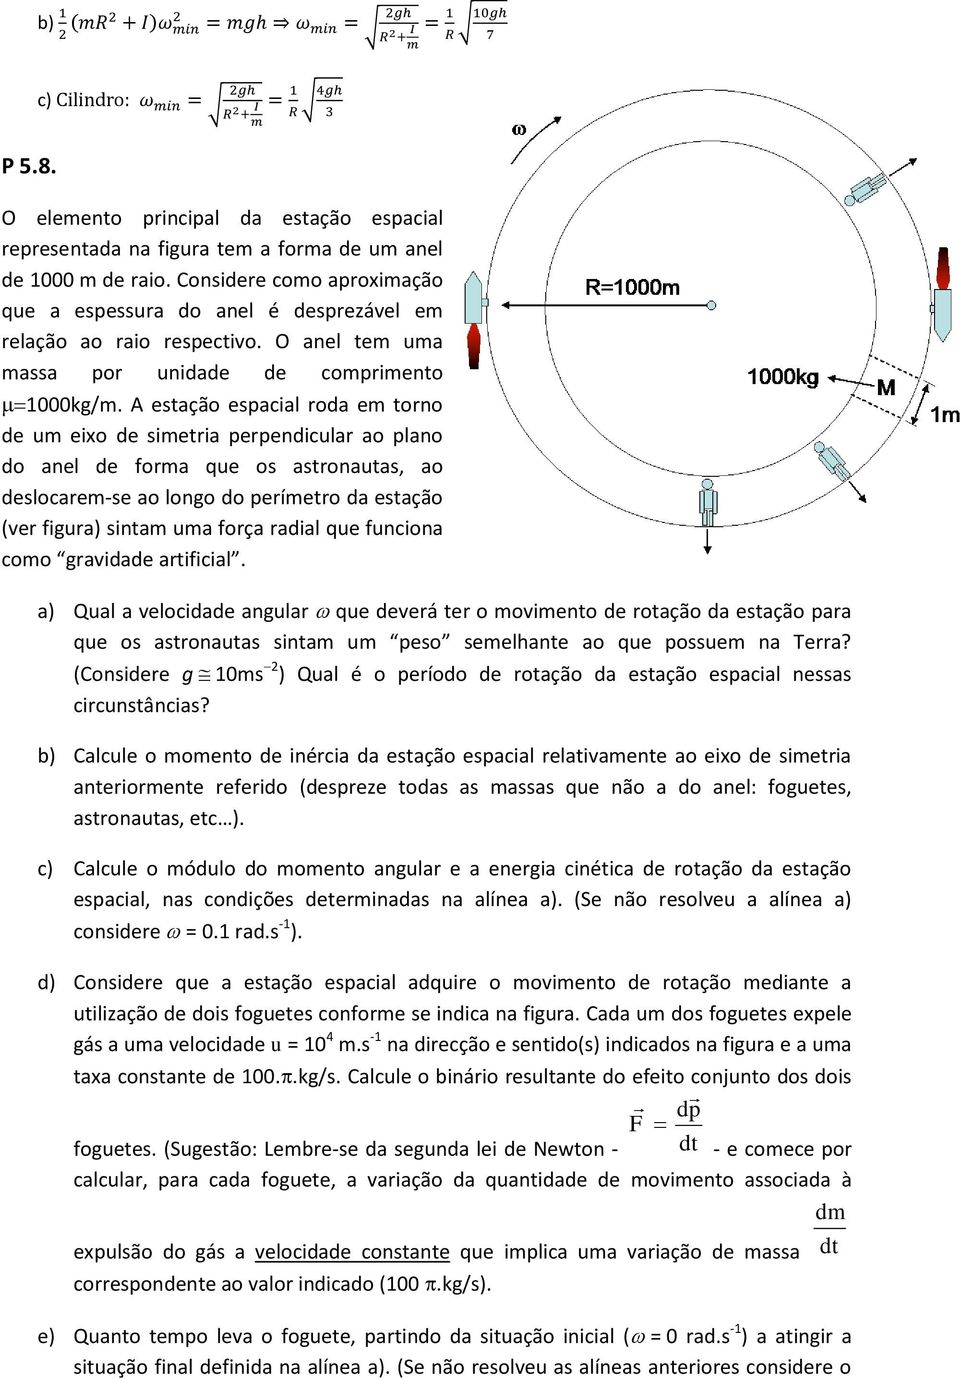 A estação espacial roda em torno de um eixo de simetria perpendicular ao plano do anel de forma que os astronautas, ao deslocarem-se ao longo do perímetro da estação (ver figura) sintam uma força